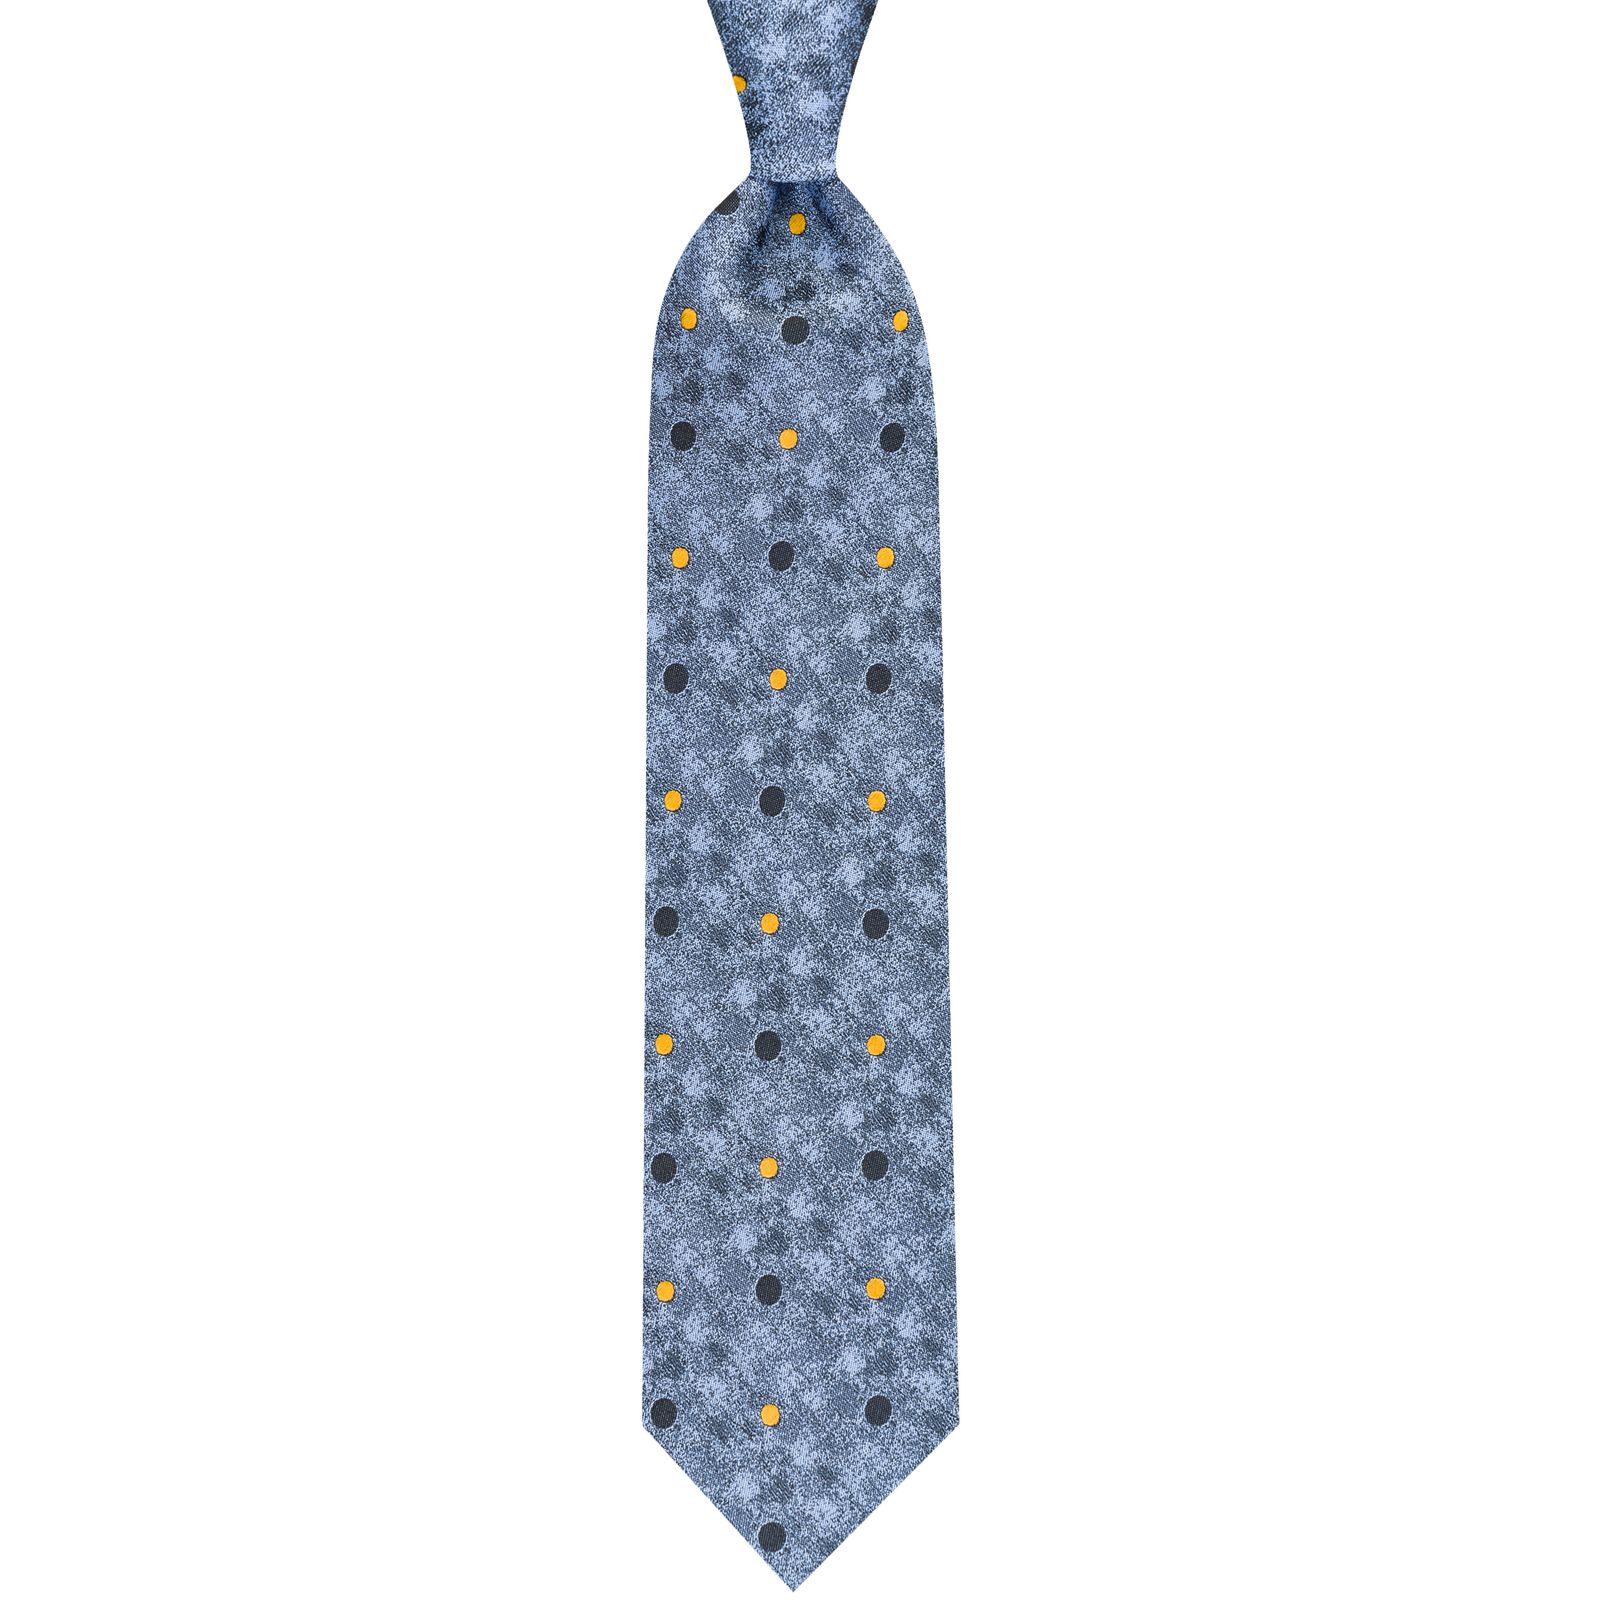  کراوات مردانه جیان فرانکو روسی مدل GF-PO520-BL -  - 3